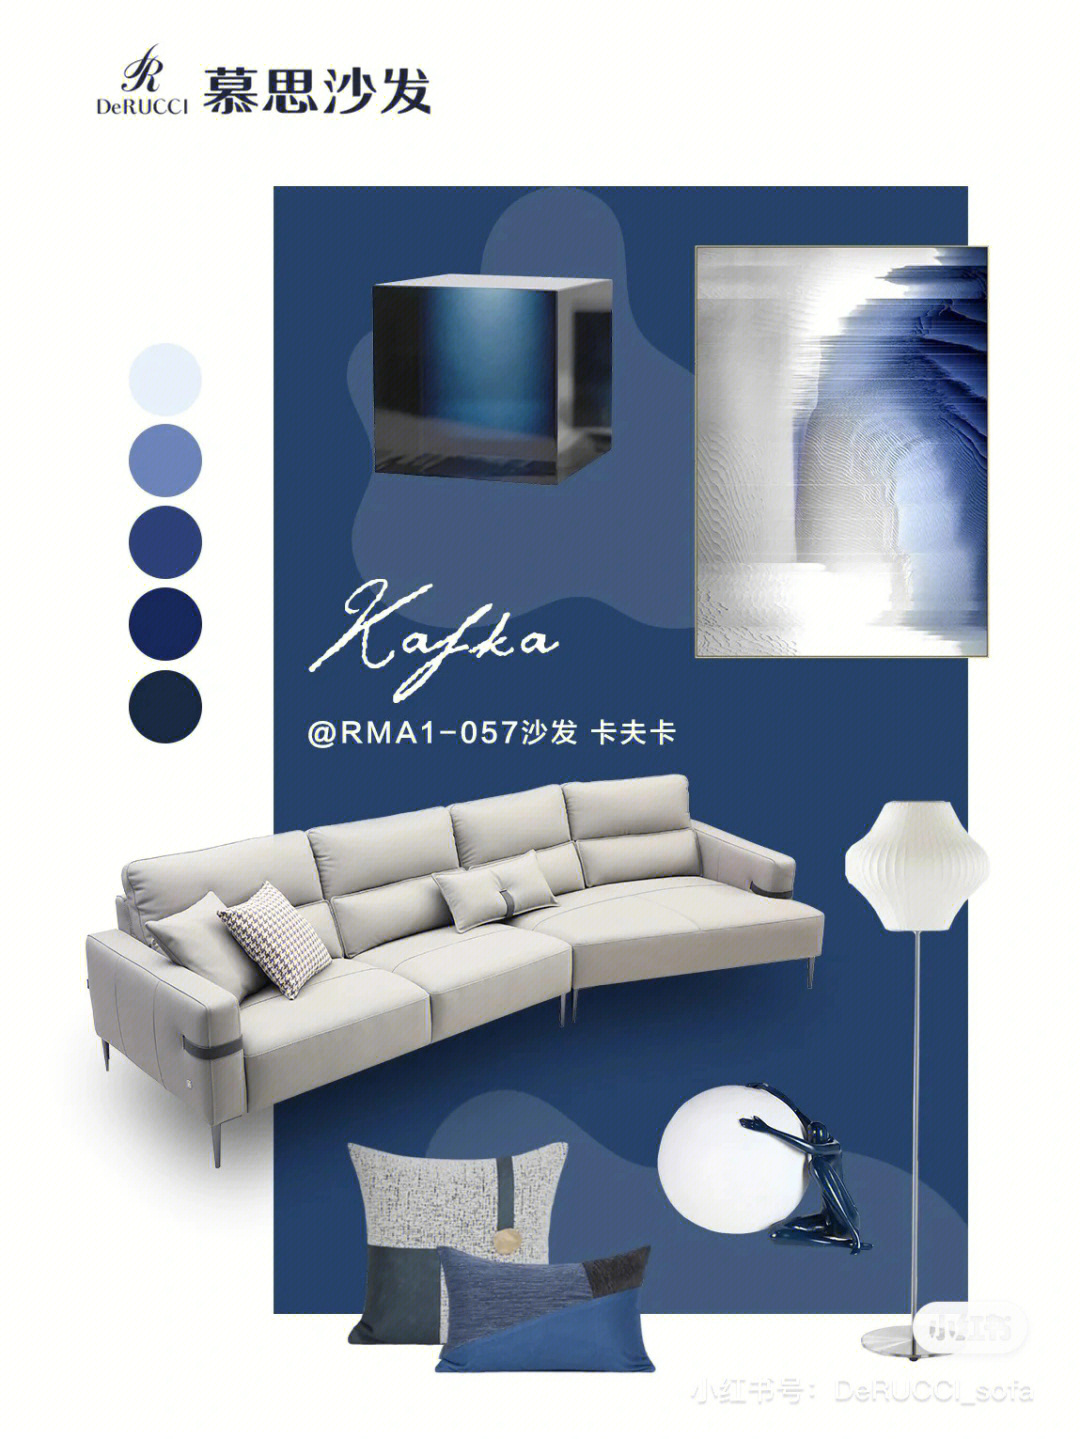 总有一种你会喜欢盛1 米灰色&蓝色系以米灰色沙发为主体的空间中,用